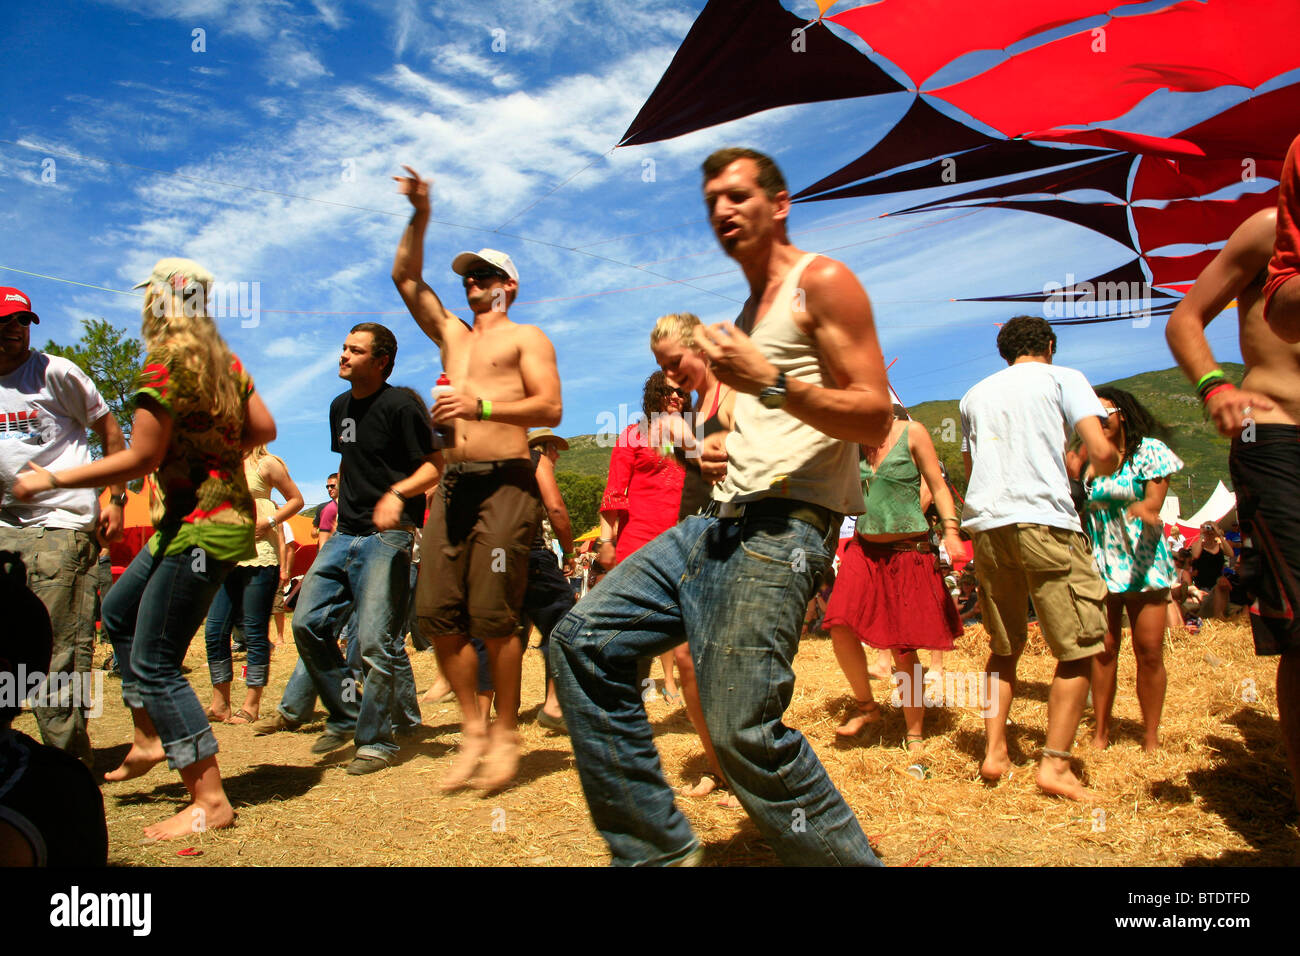 Tänzer und Partygänger bei einem Outdoor-Trance-party Stockfoto